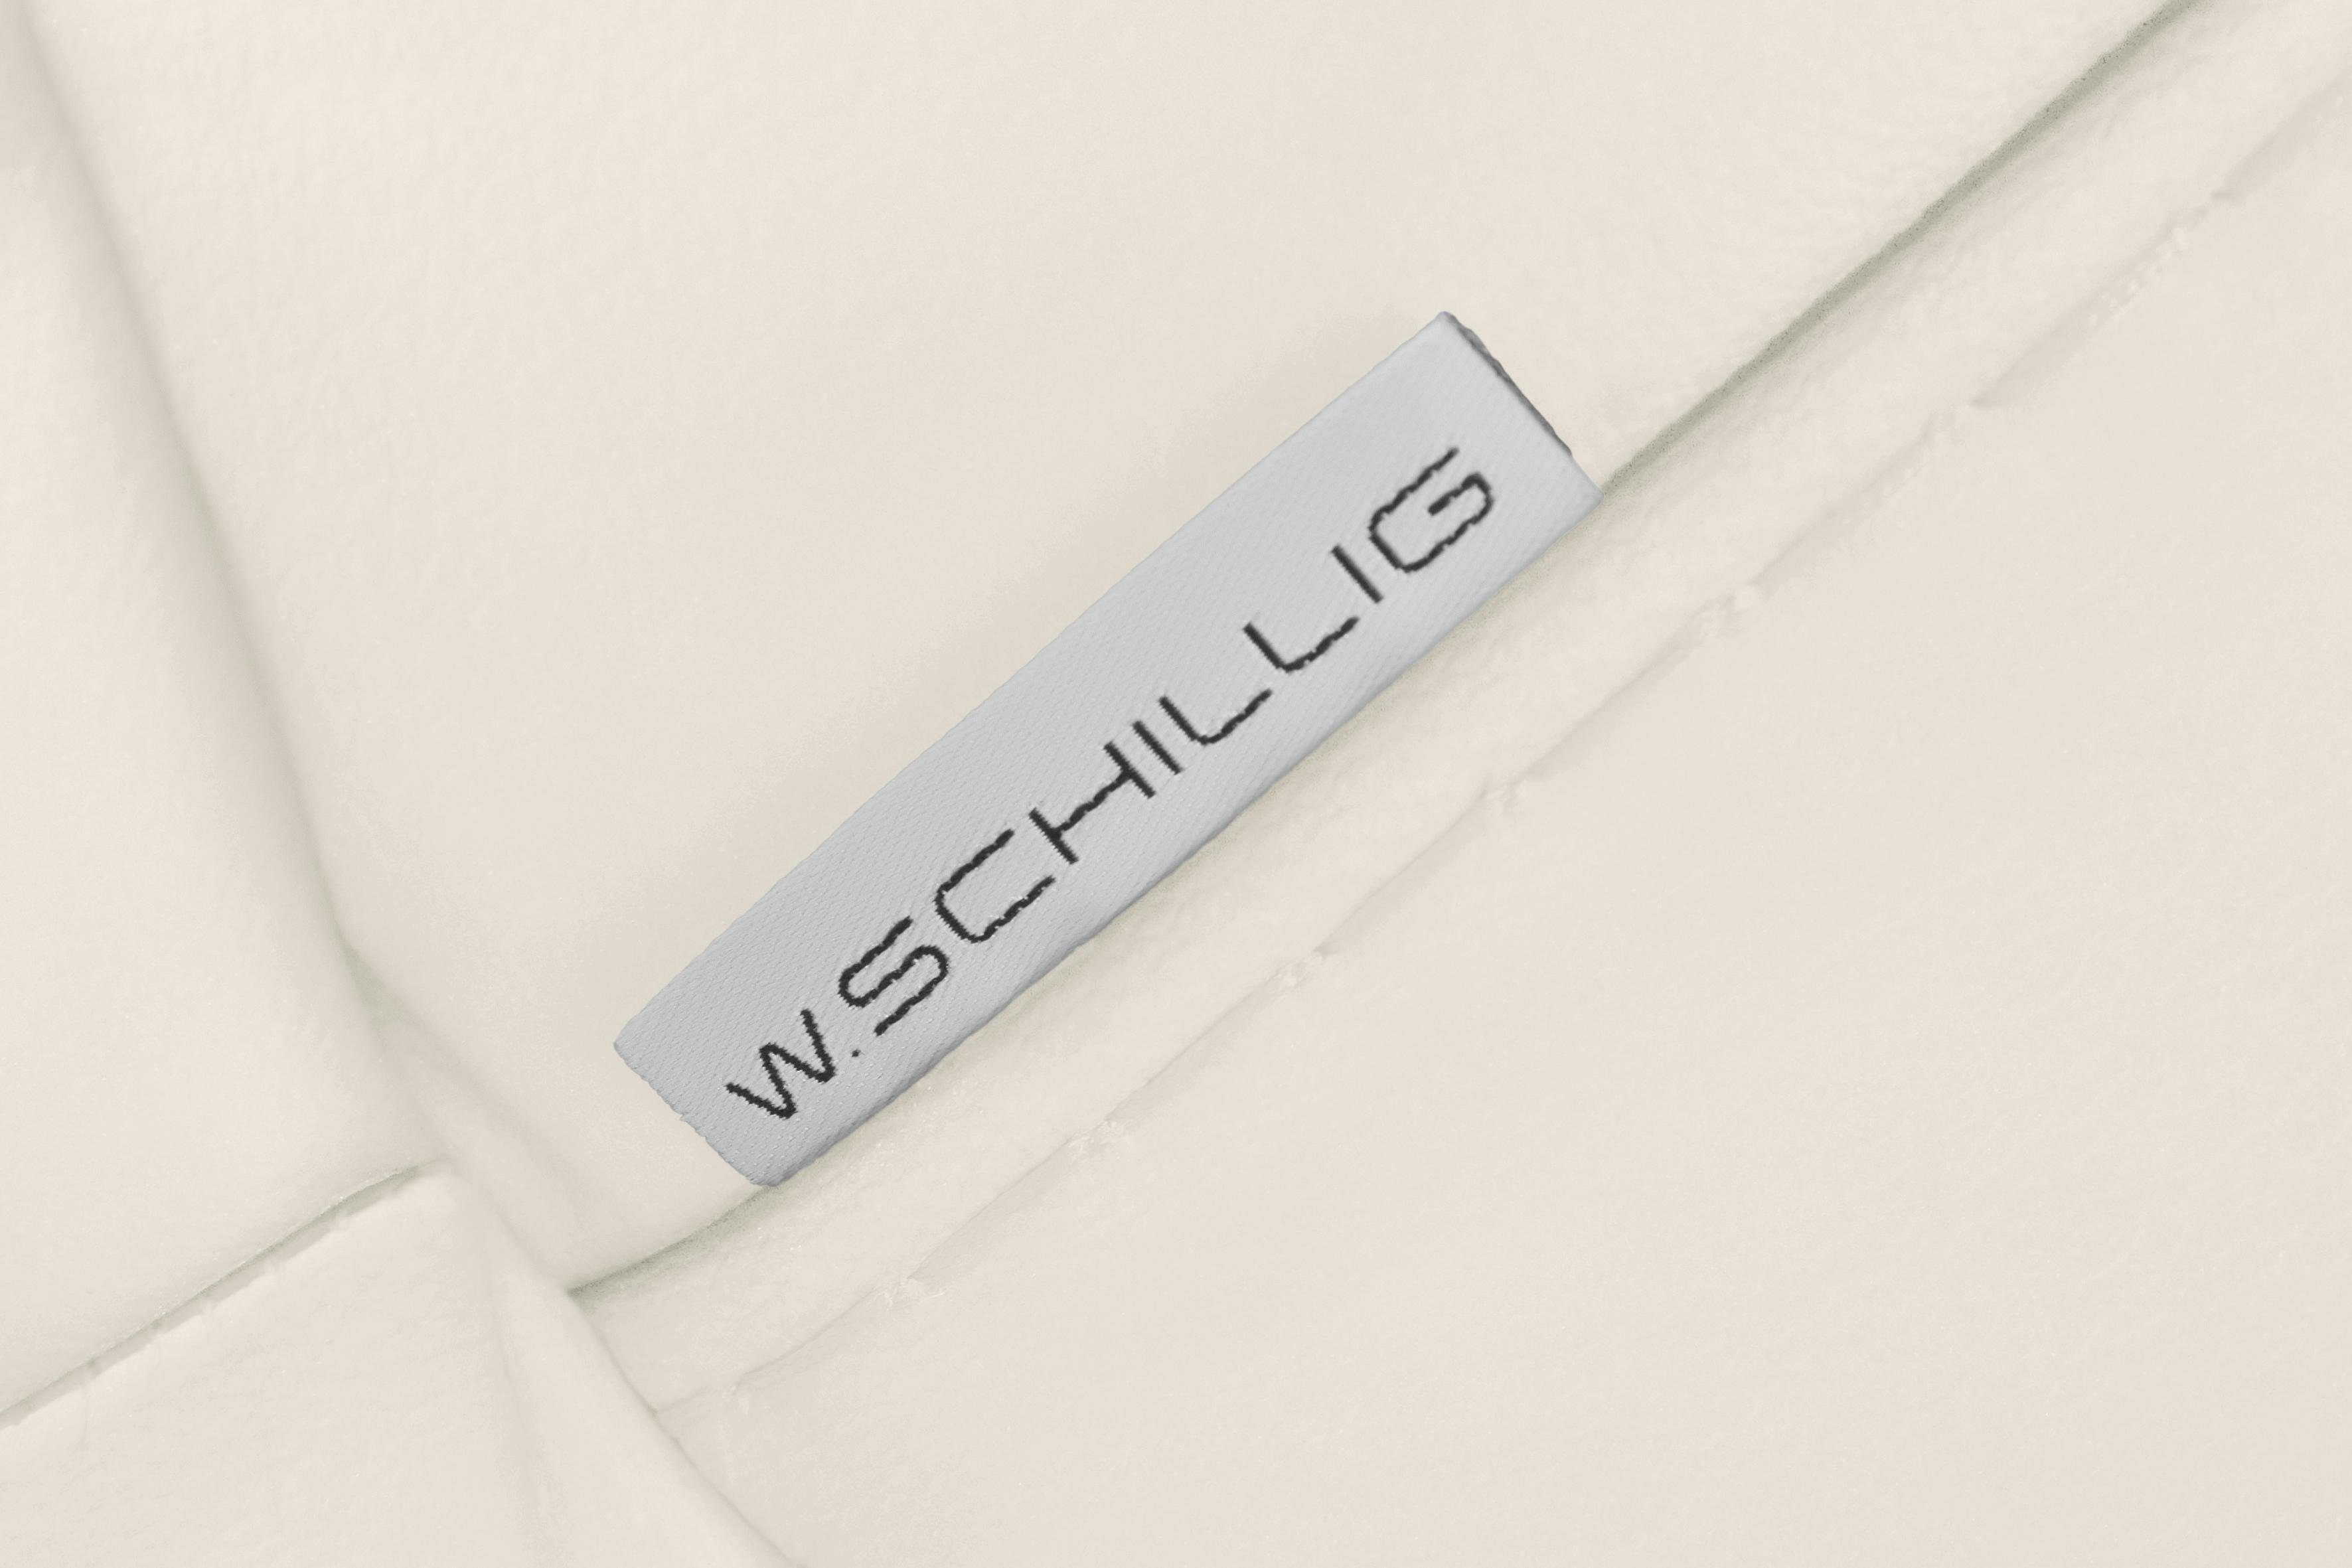 W.SCHILLIG 2-Sitzer glänzend, Metallfüßen 192 montanaa, Chrom cm mit Breite in